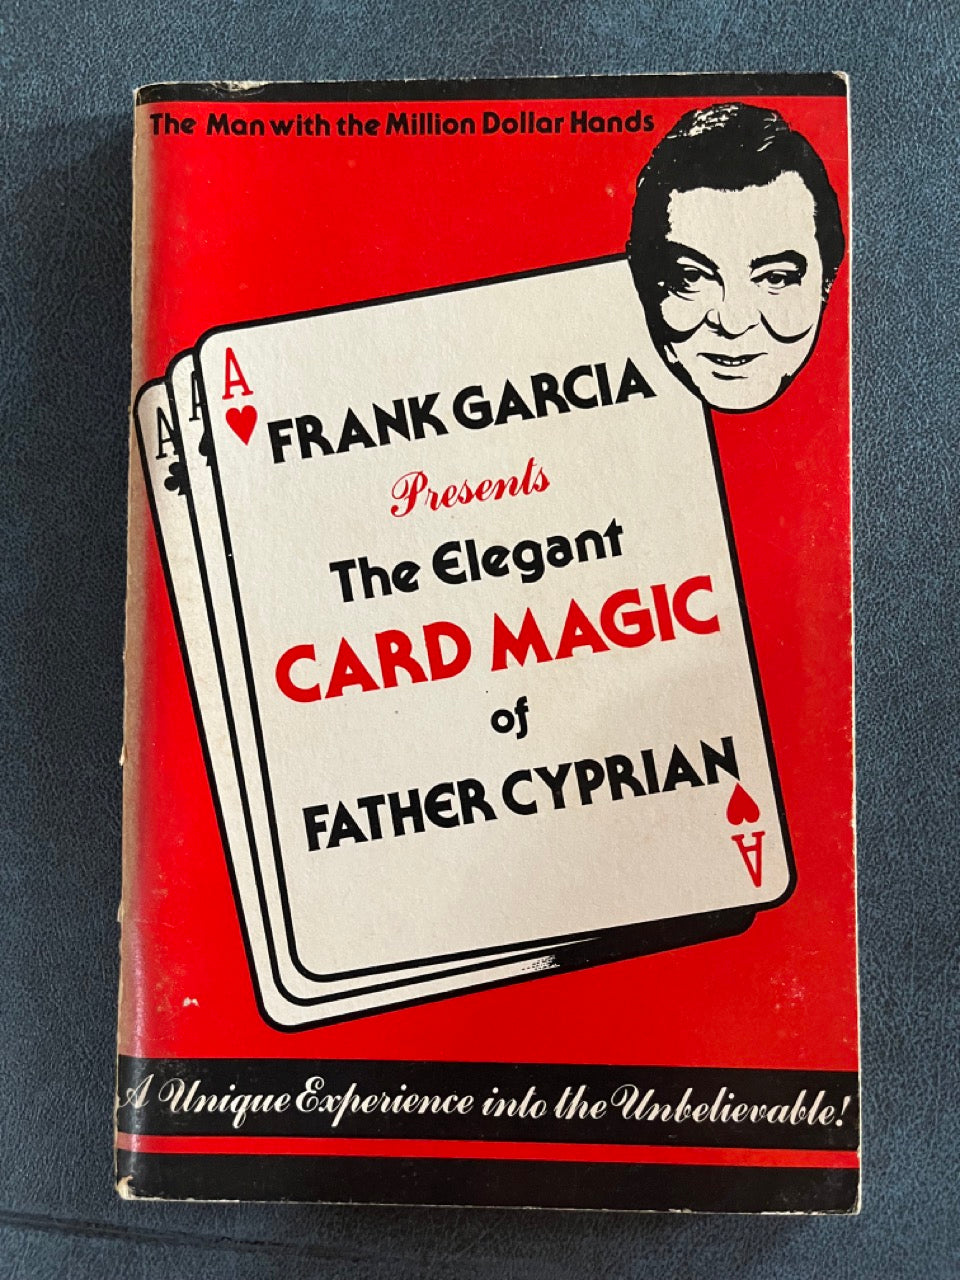 The Elegant Card Magic of Father Cyprian - Frank Garcia